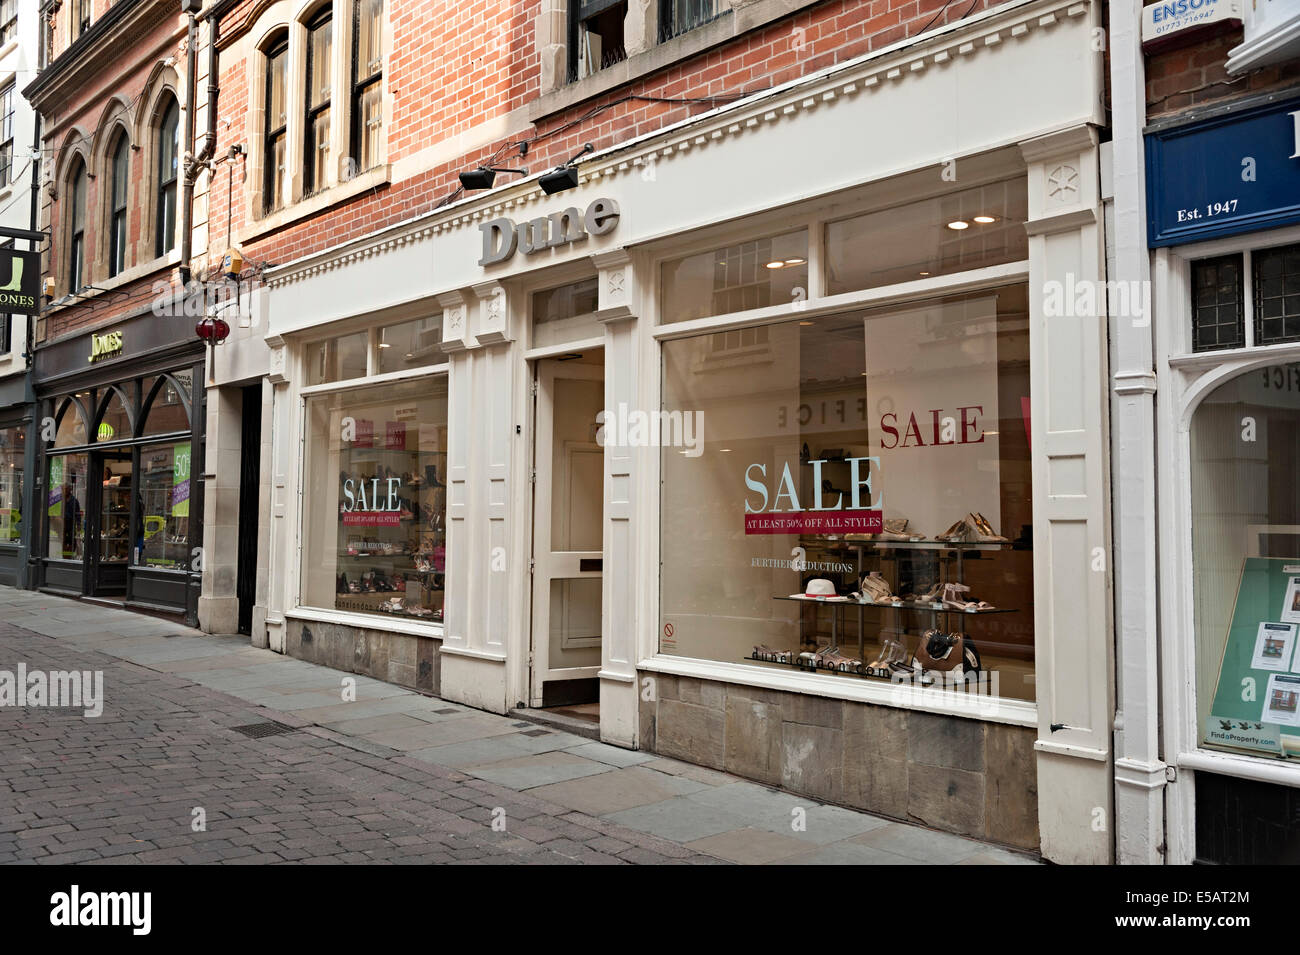 Boutique de mode de vente chaussure dune inscription nottingham Banque D'Images